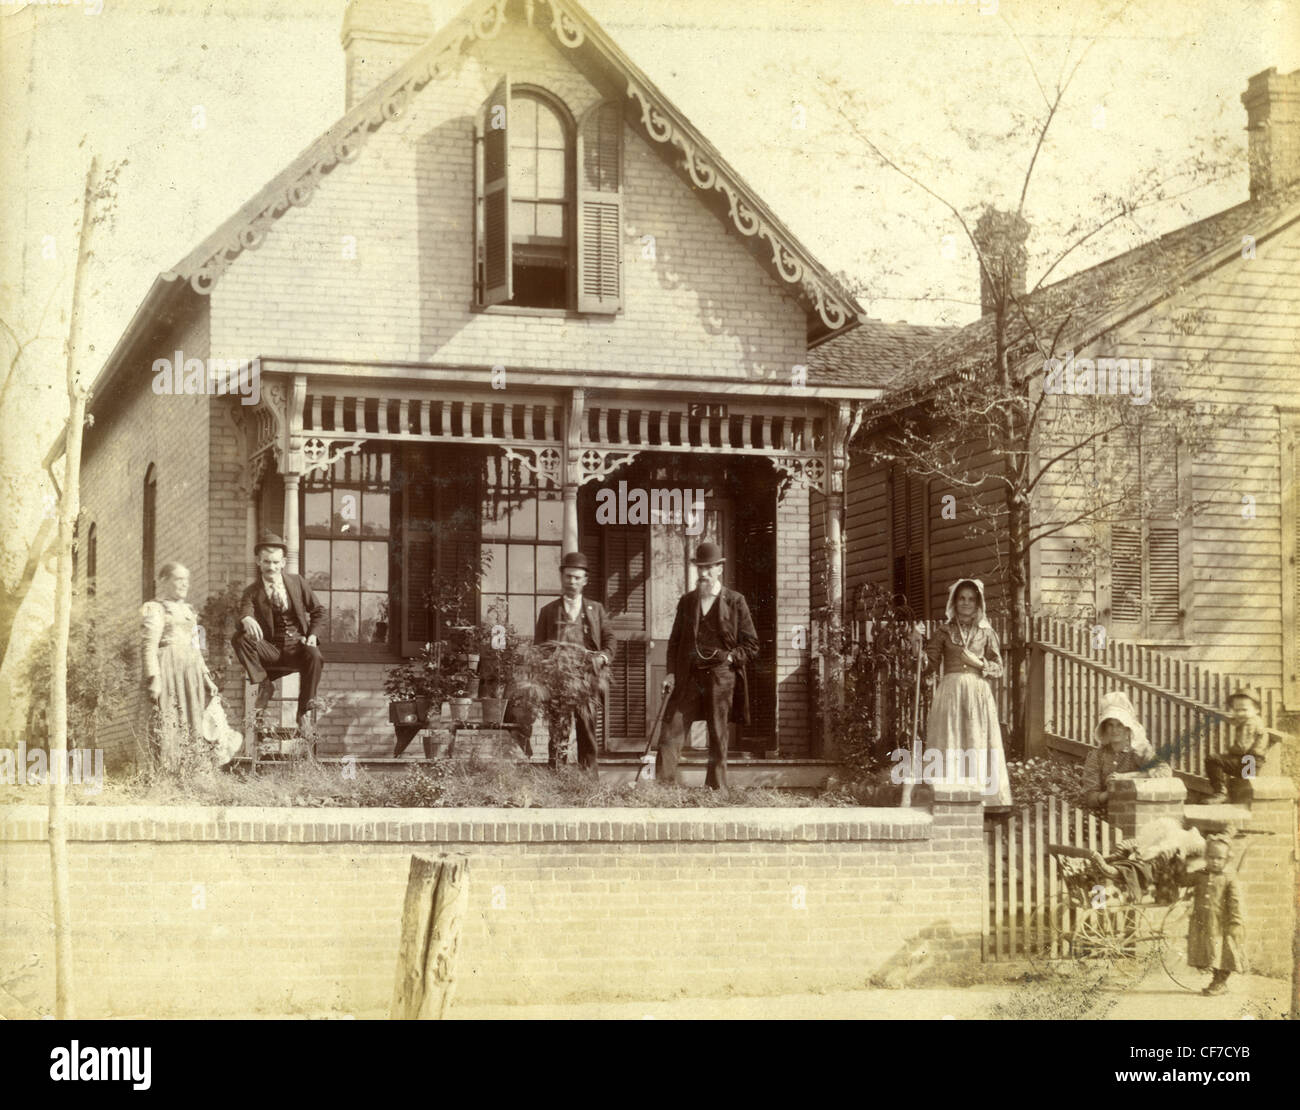 Assis en face de la famille d'accueil en bois à la fin des années 1800 ou au début des années 1900 dans l'Indiana famille pionnière homesteaders ornate archit Banque D'Images